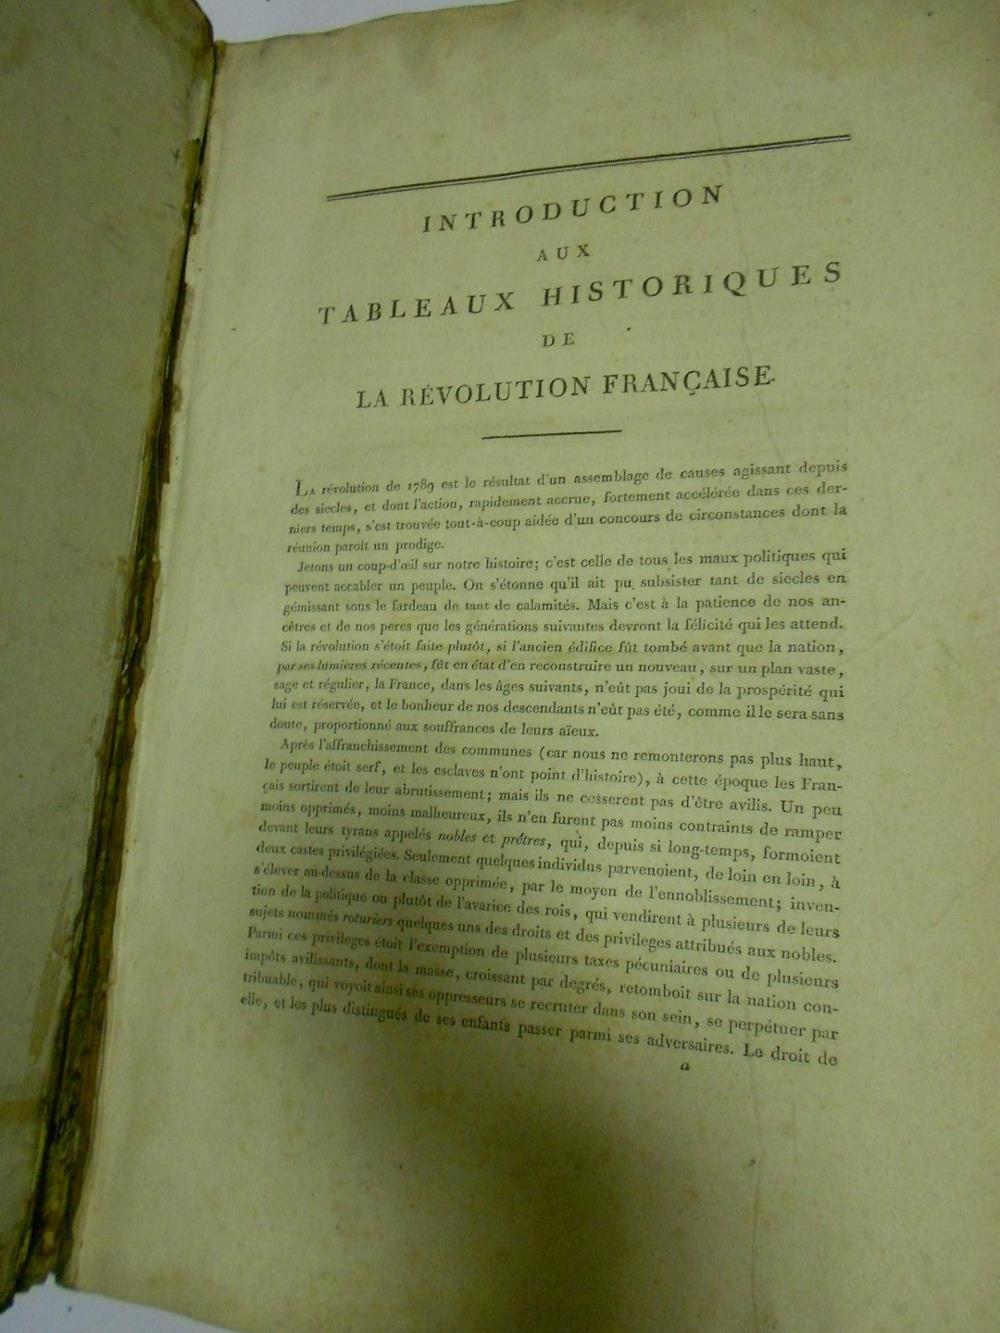 French Revolution. Tableaux Historiques de la Revolution Francaise, circa 1800, folio, lacking - Image 2 of 4